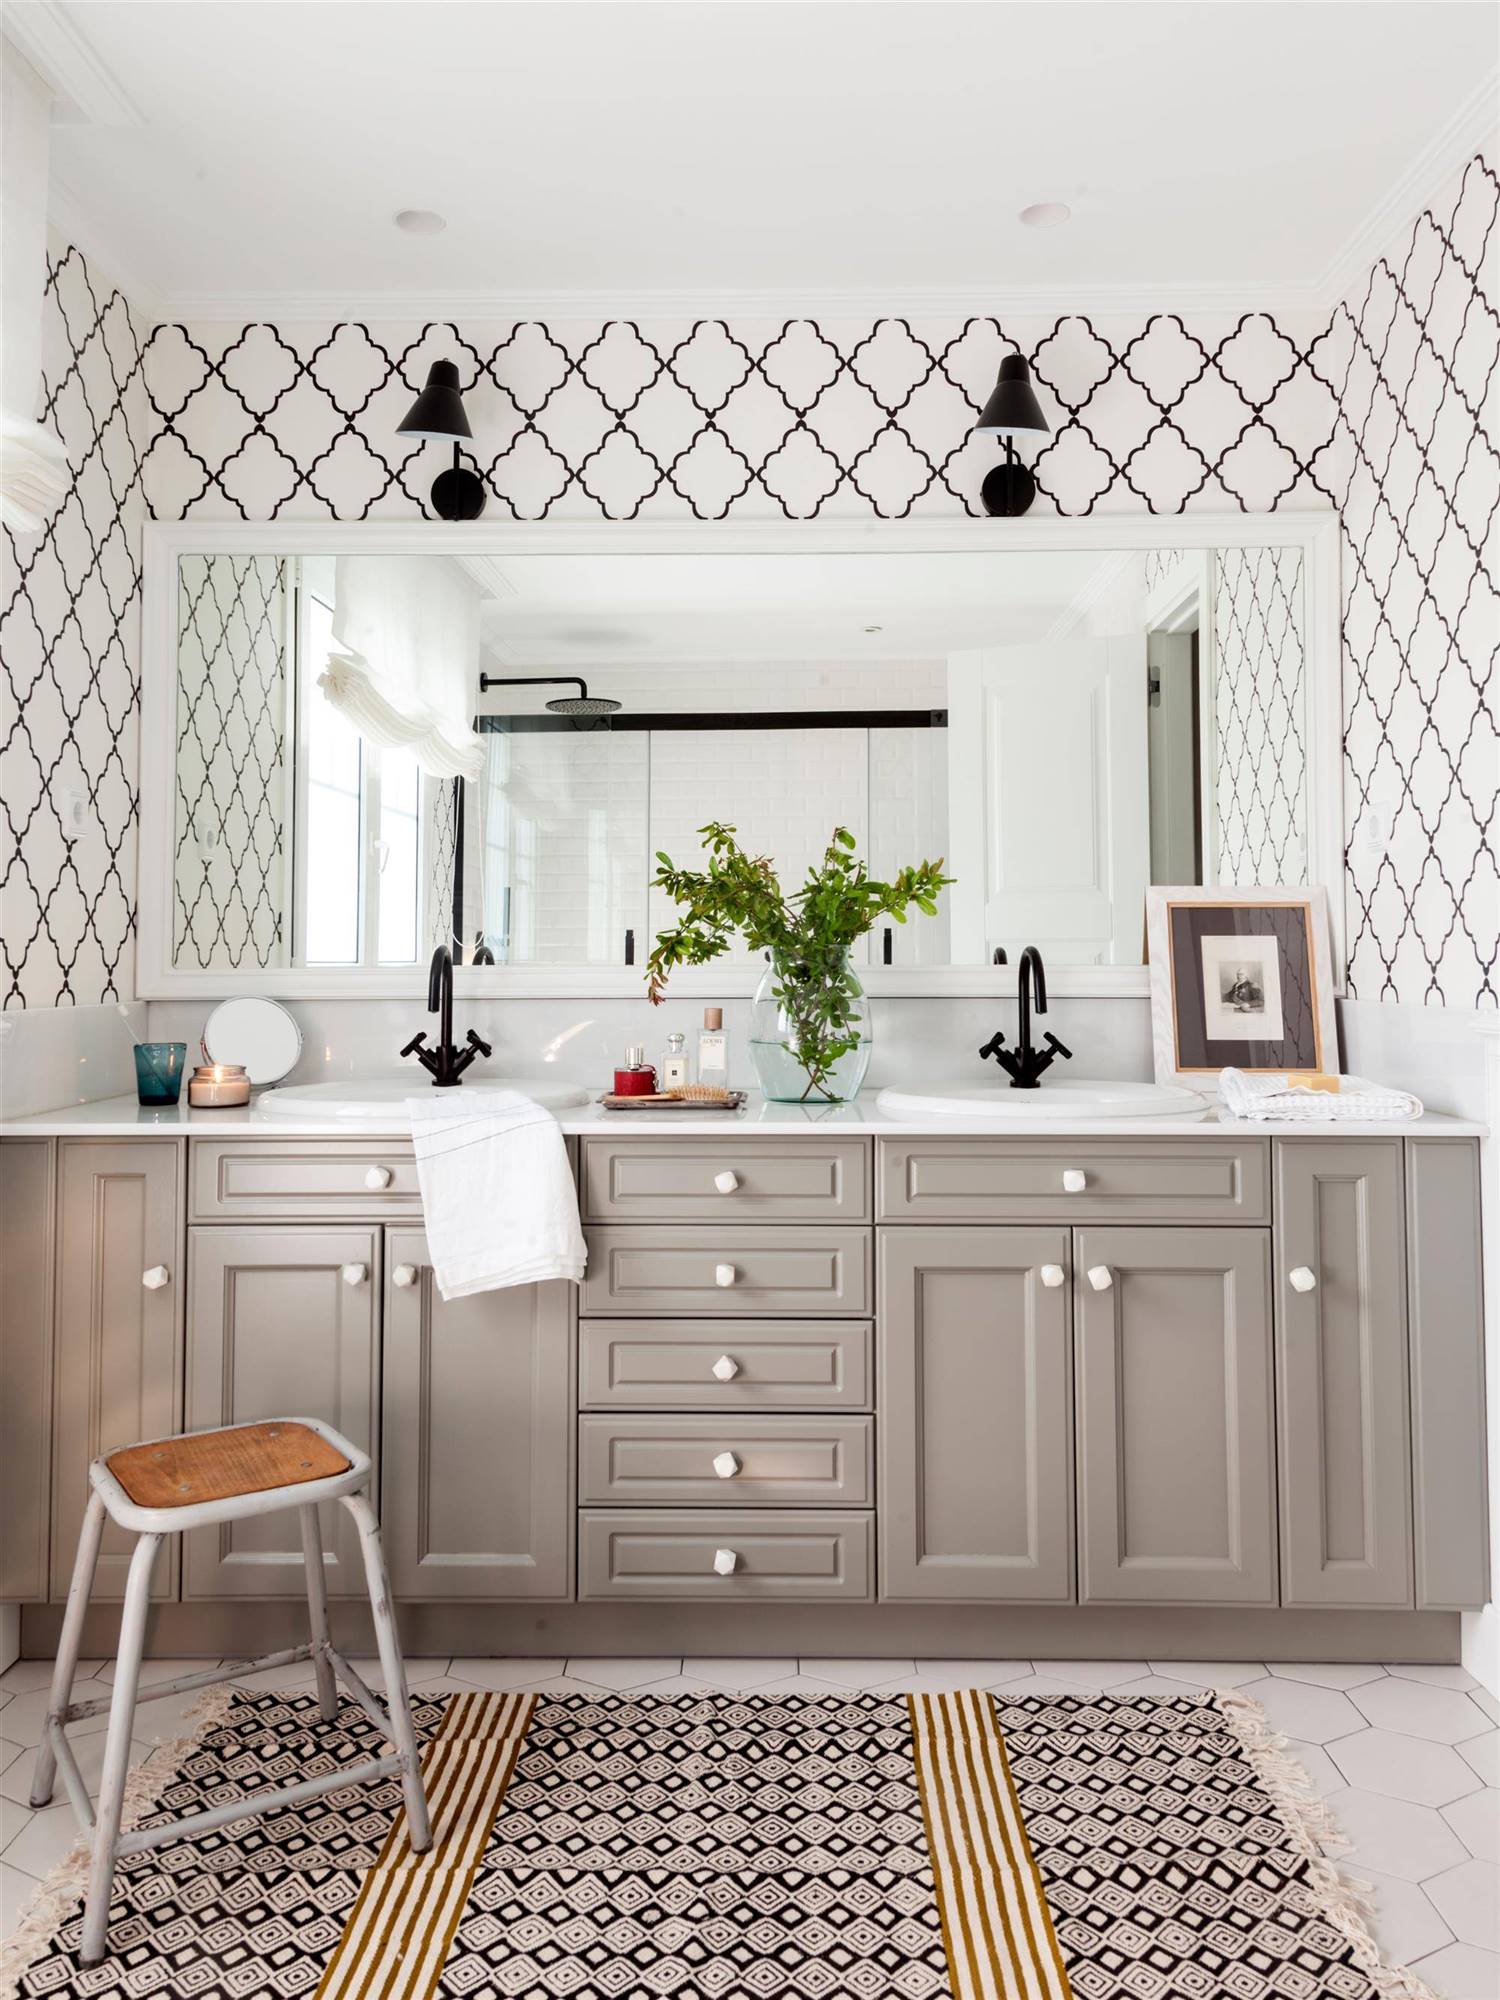 483226- baño con armarios color gris, espejo rectangular y paredes blancas con motivos geométricos